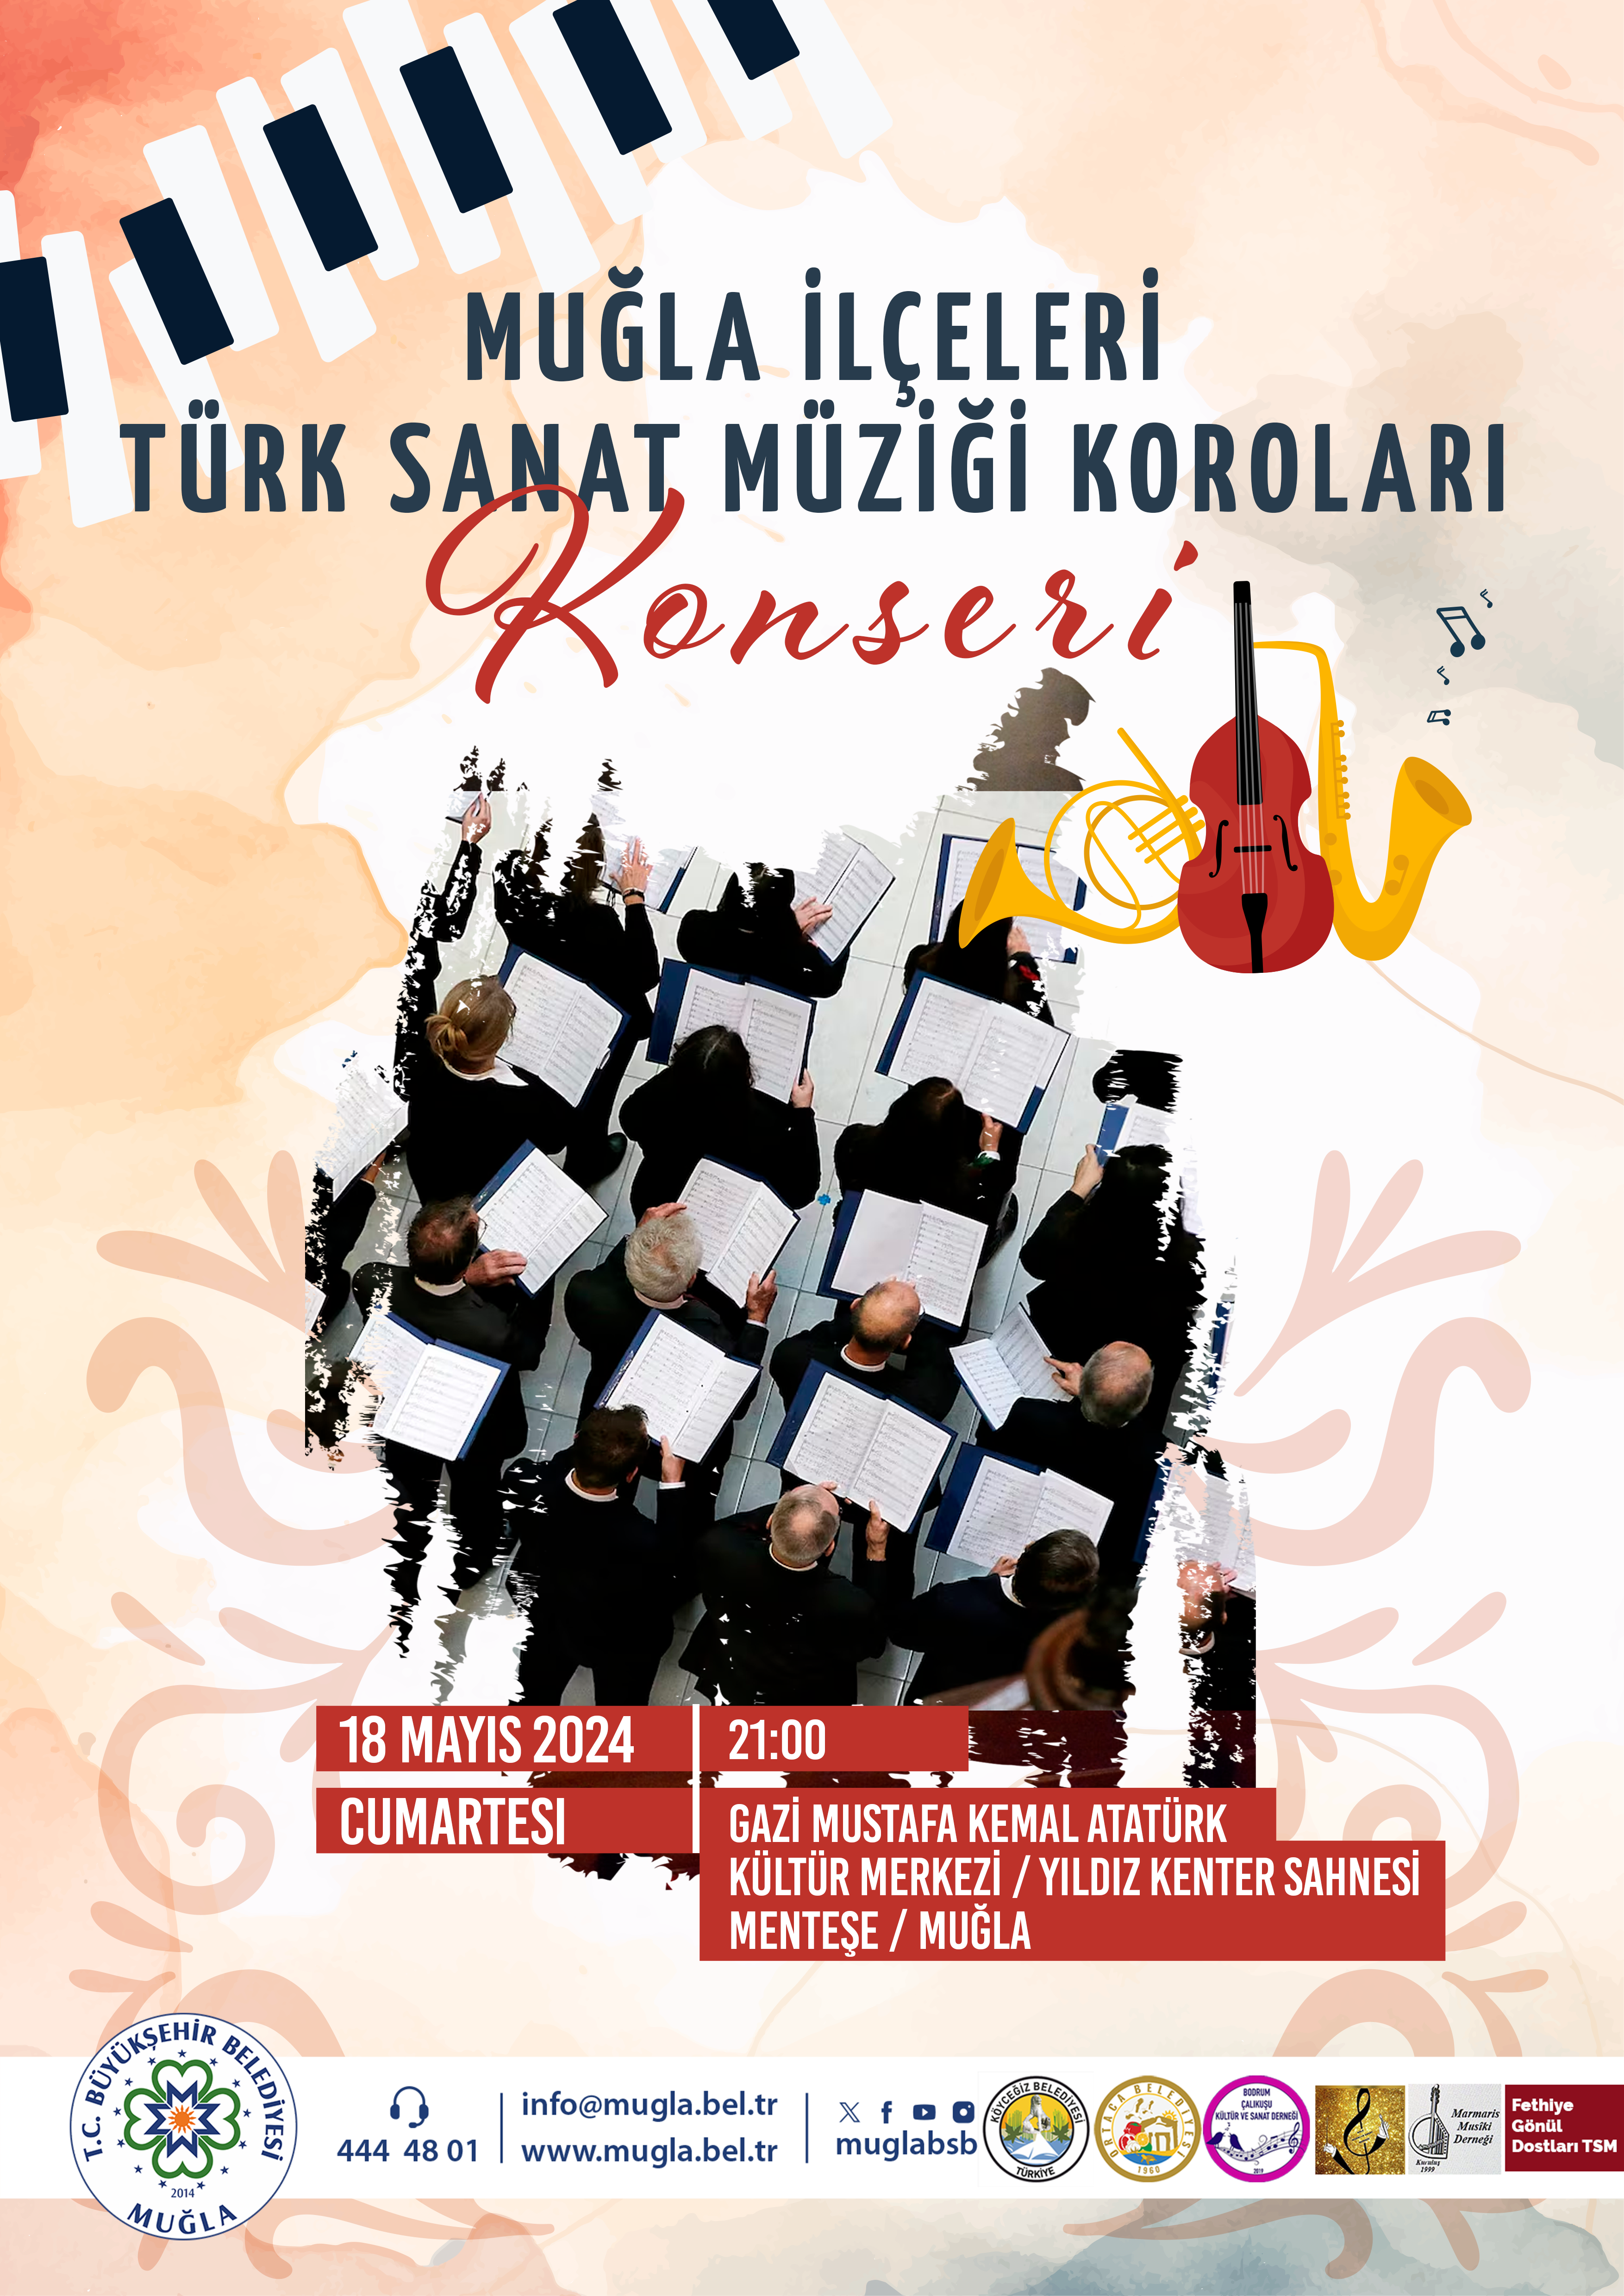 Mula İlçeleri Türk Sanat Müzii Koroları Konseri  Etkinliğine Davetlisiniz